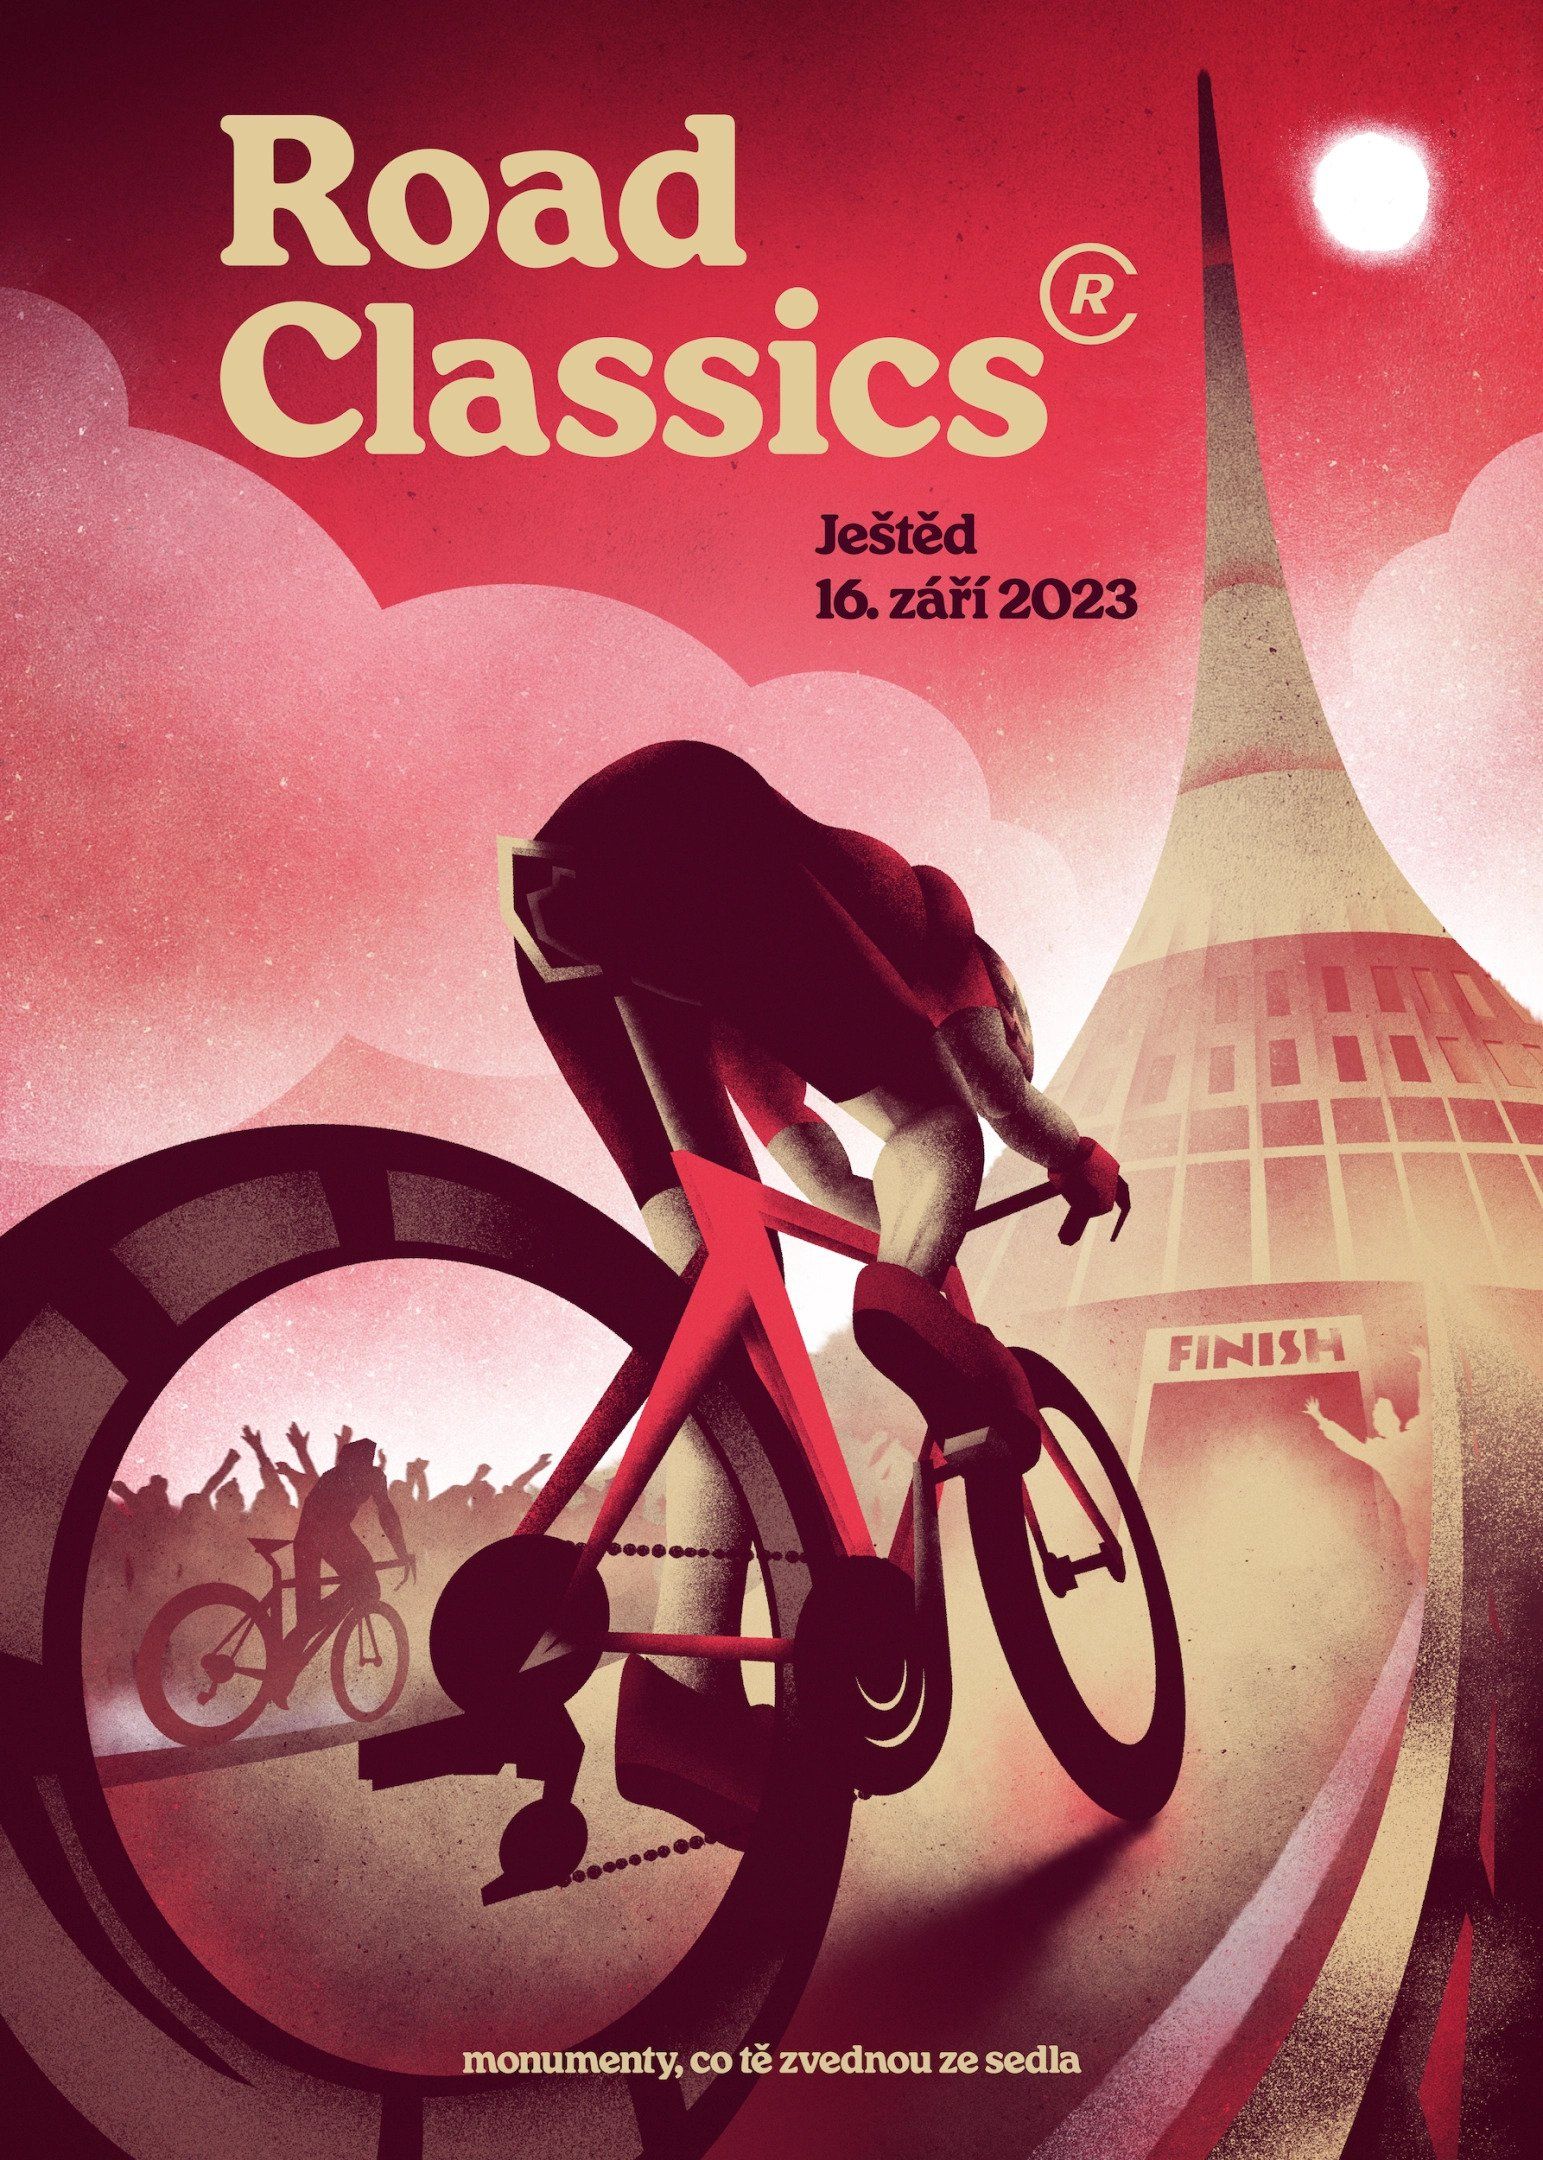 Tomski&Polanski, 2023, plakát k premiérovému dílu cyklistického seriálu Road Classics vrcholícím na ikonickém Ještědu